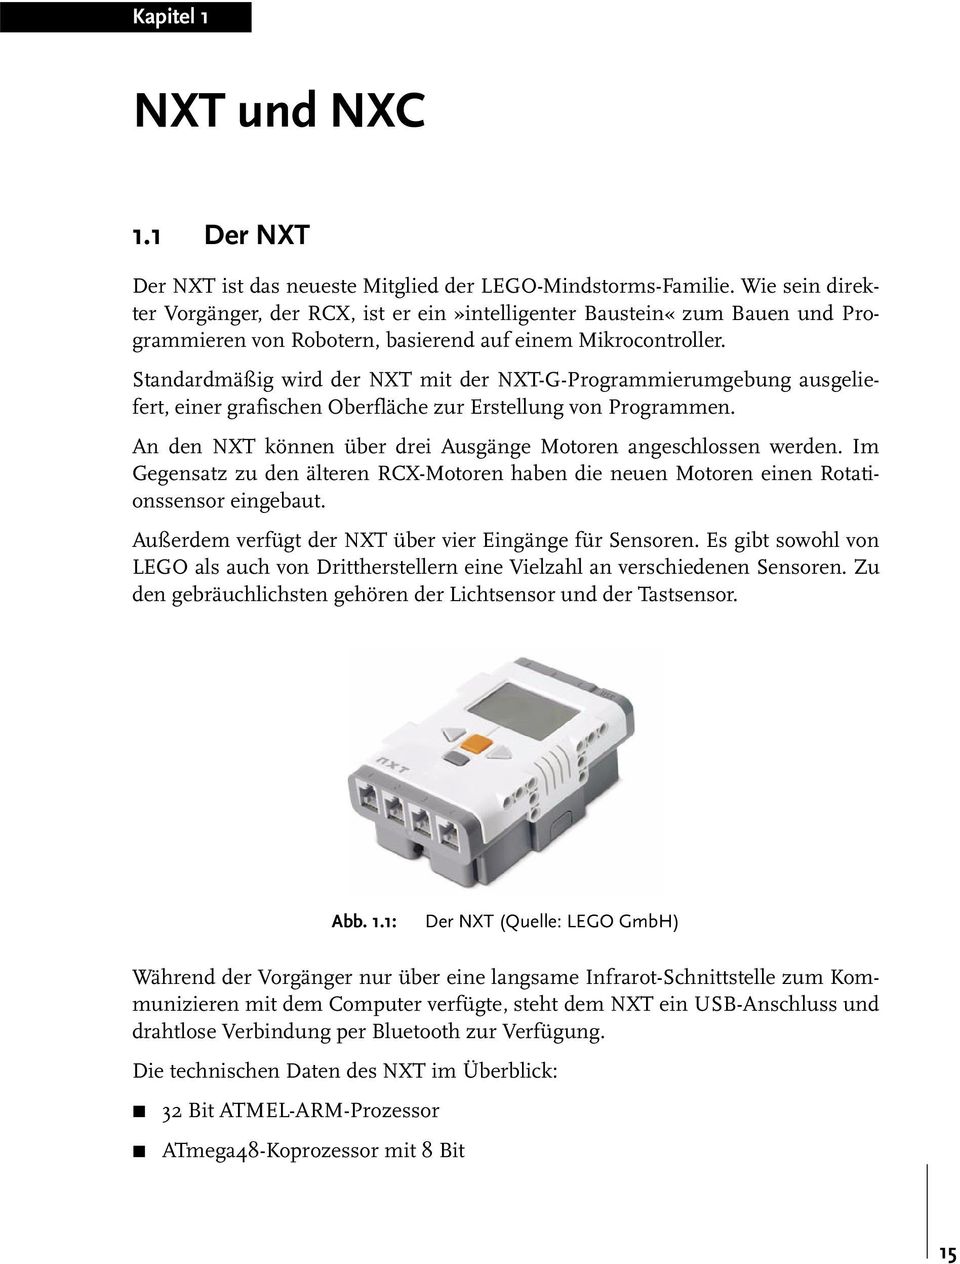 Standardmäßig wird der NXT mit der NXT-G-Programmierumgebung ausgeliefert, einer grafischen Oberfläche zur Erstellung von Programmen. An den NXT können über drei Ausgänge Motoren angeschlossen werden.